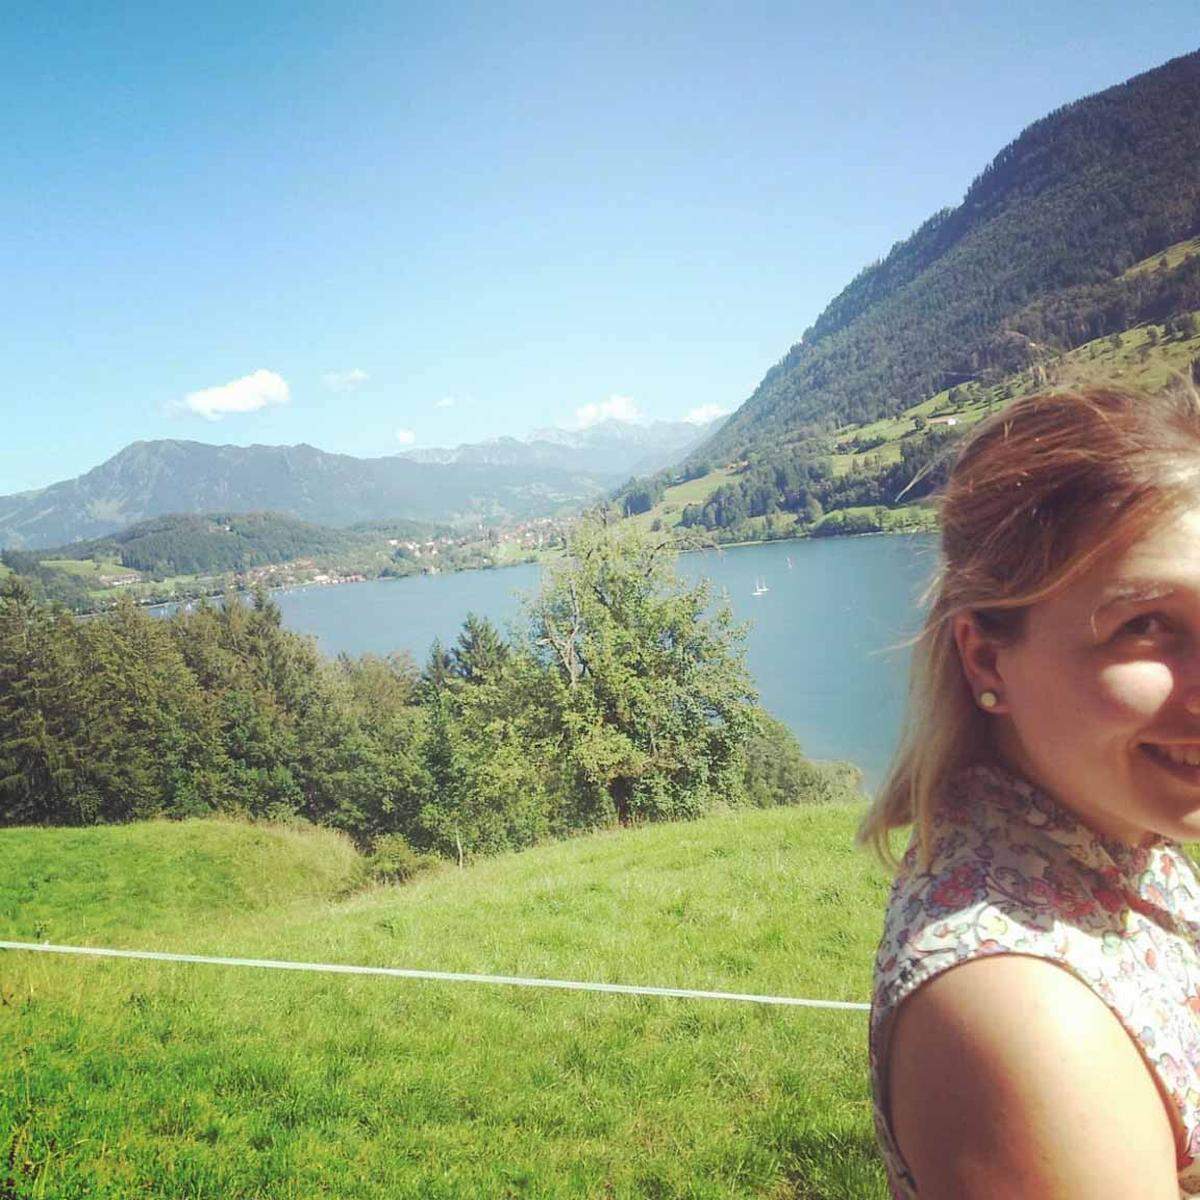 Lena Fuhrmann hat das Kulturprogramm einmal ruhen lassen und war im Allgäuer Alpenland. Zum Wandern und Entspannen, und um ihr neues Dirndl auf der Allgäuer Festwoche in Kempten auszuführen.